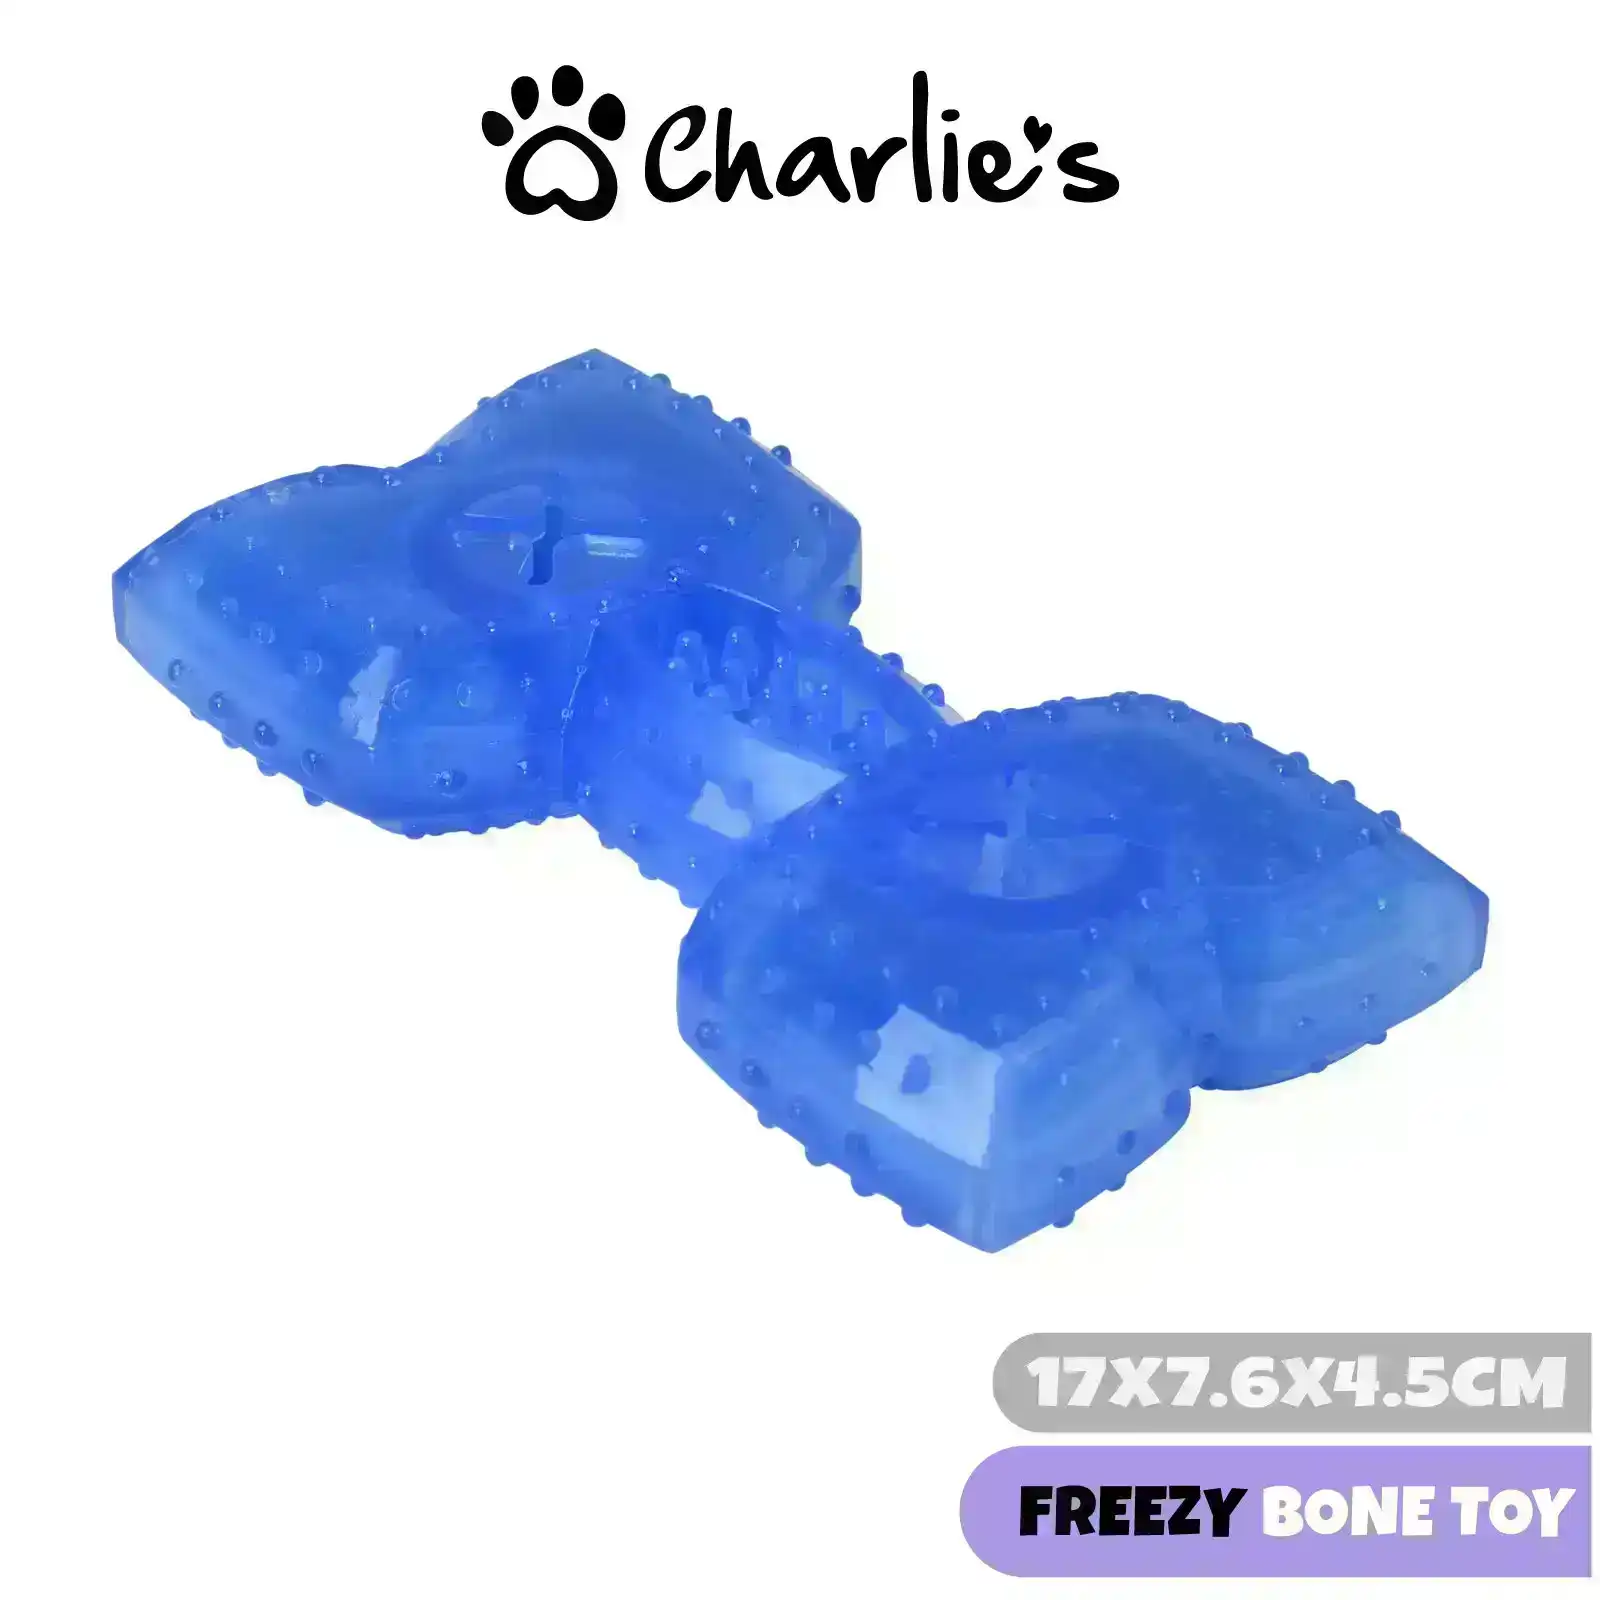 Charlie's Freezy Bone Toy Blue 15x7.6x2.5cm